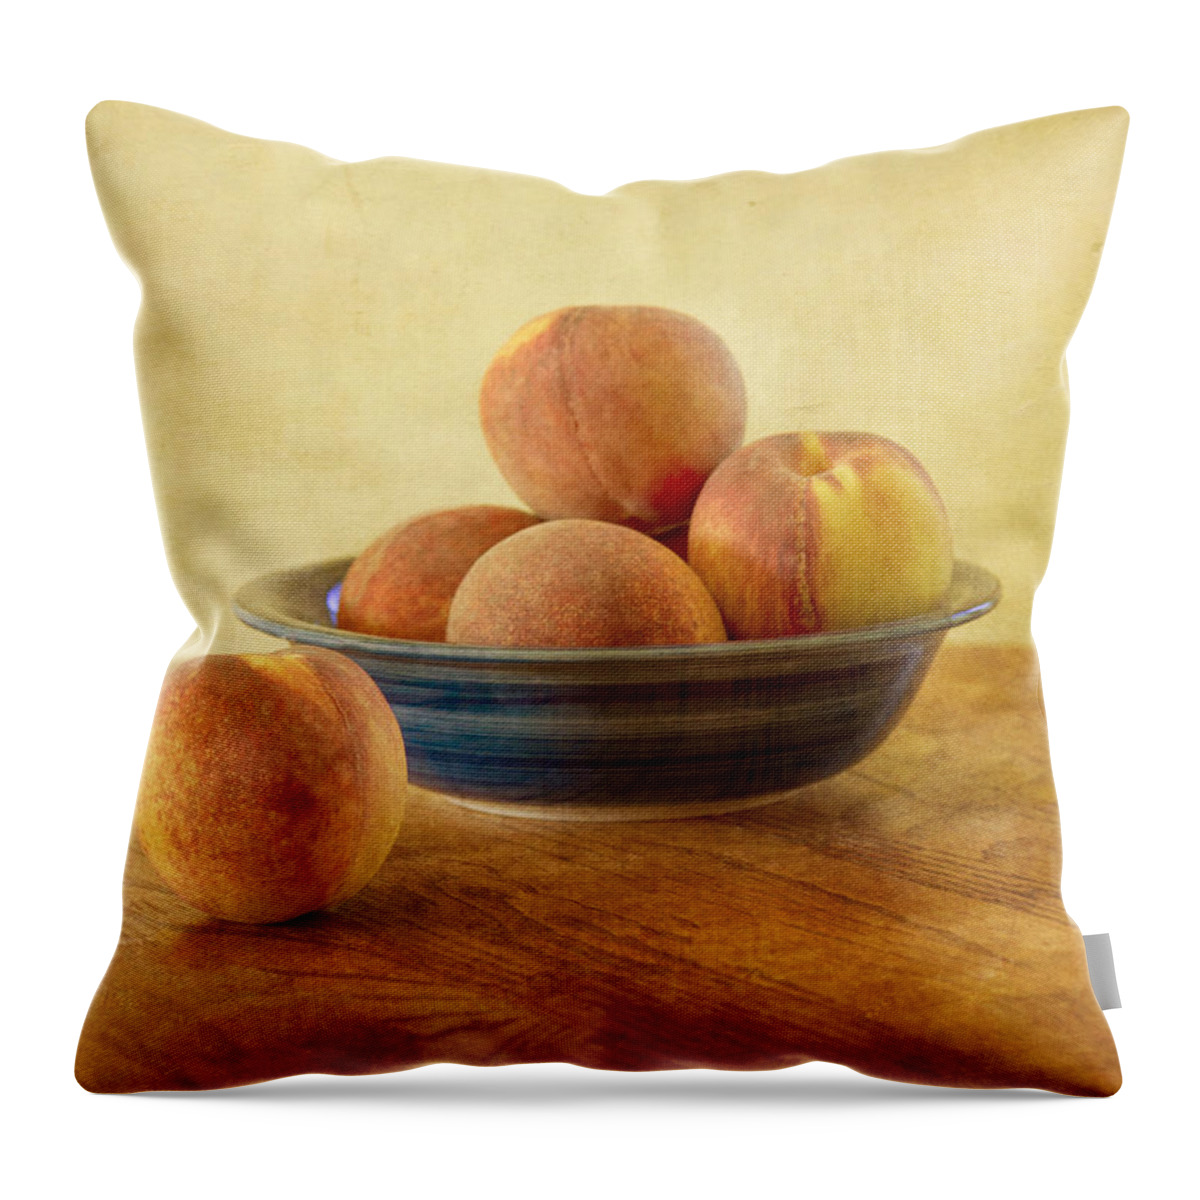 Peach Throw Pillow featuring the photograph Fresh Peaches by Kim Hojnacki